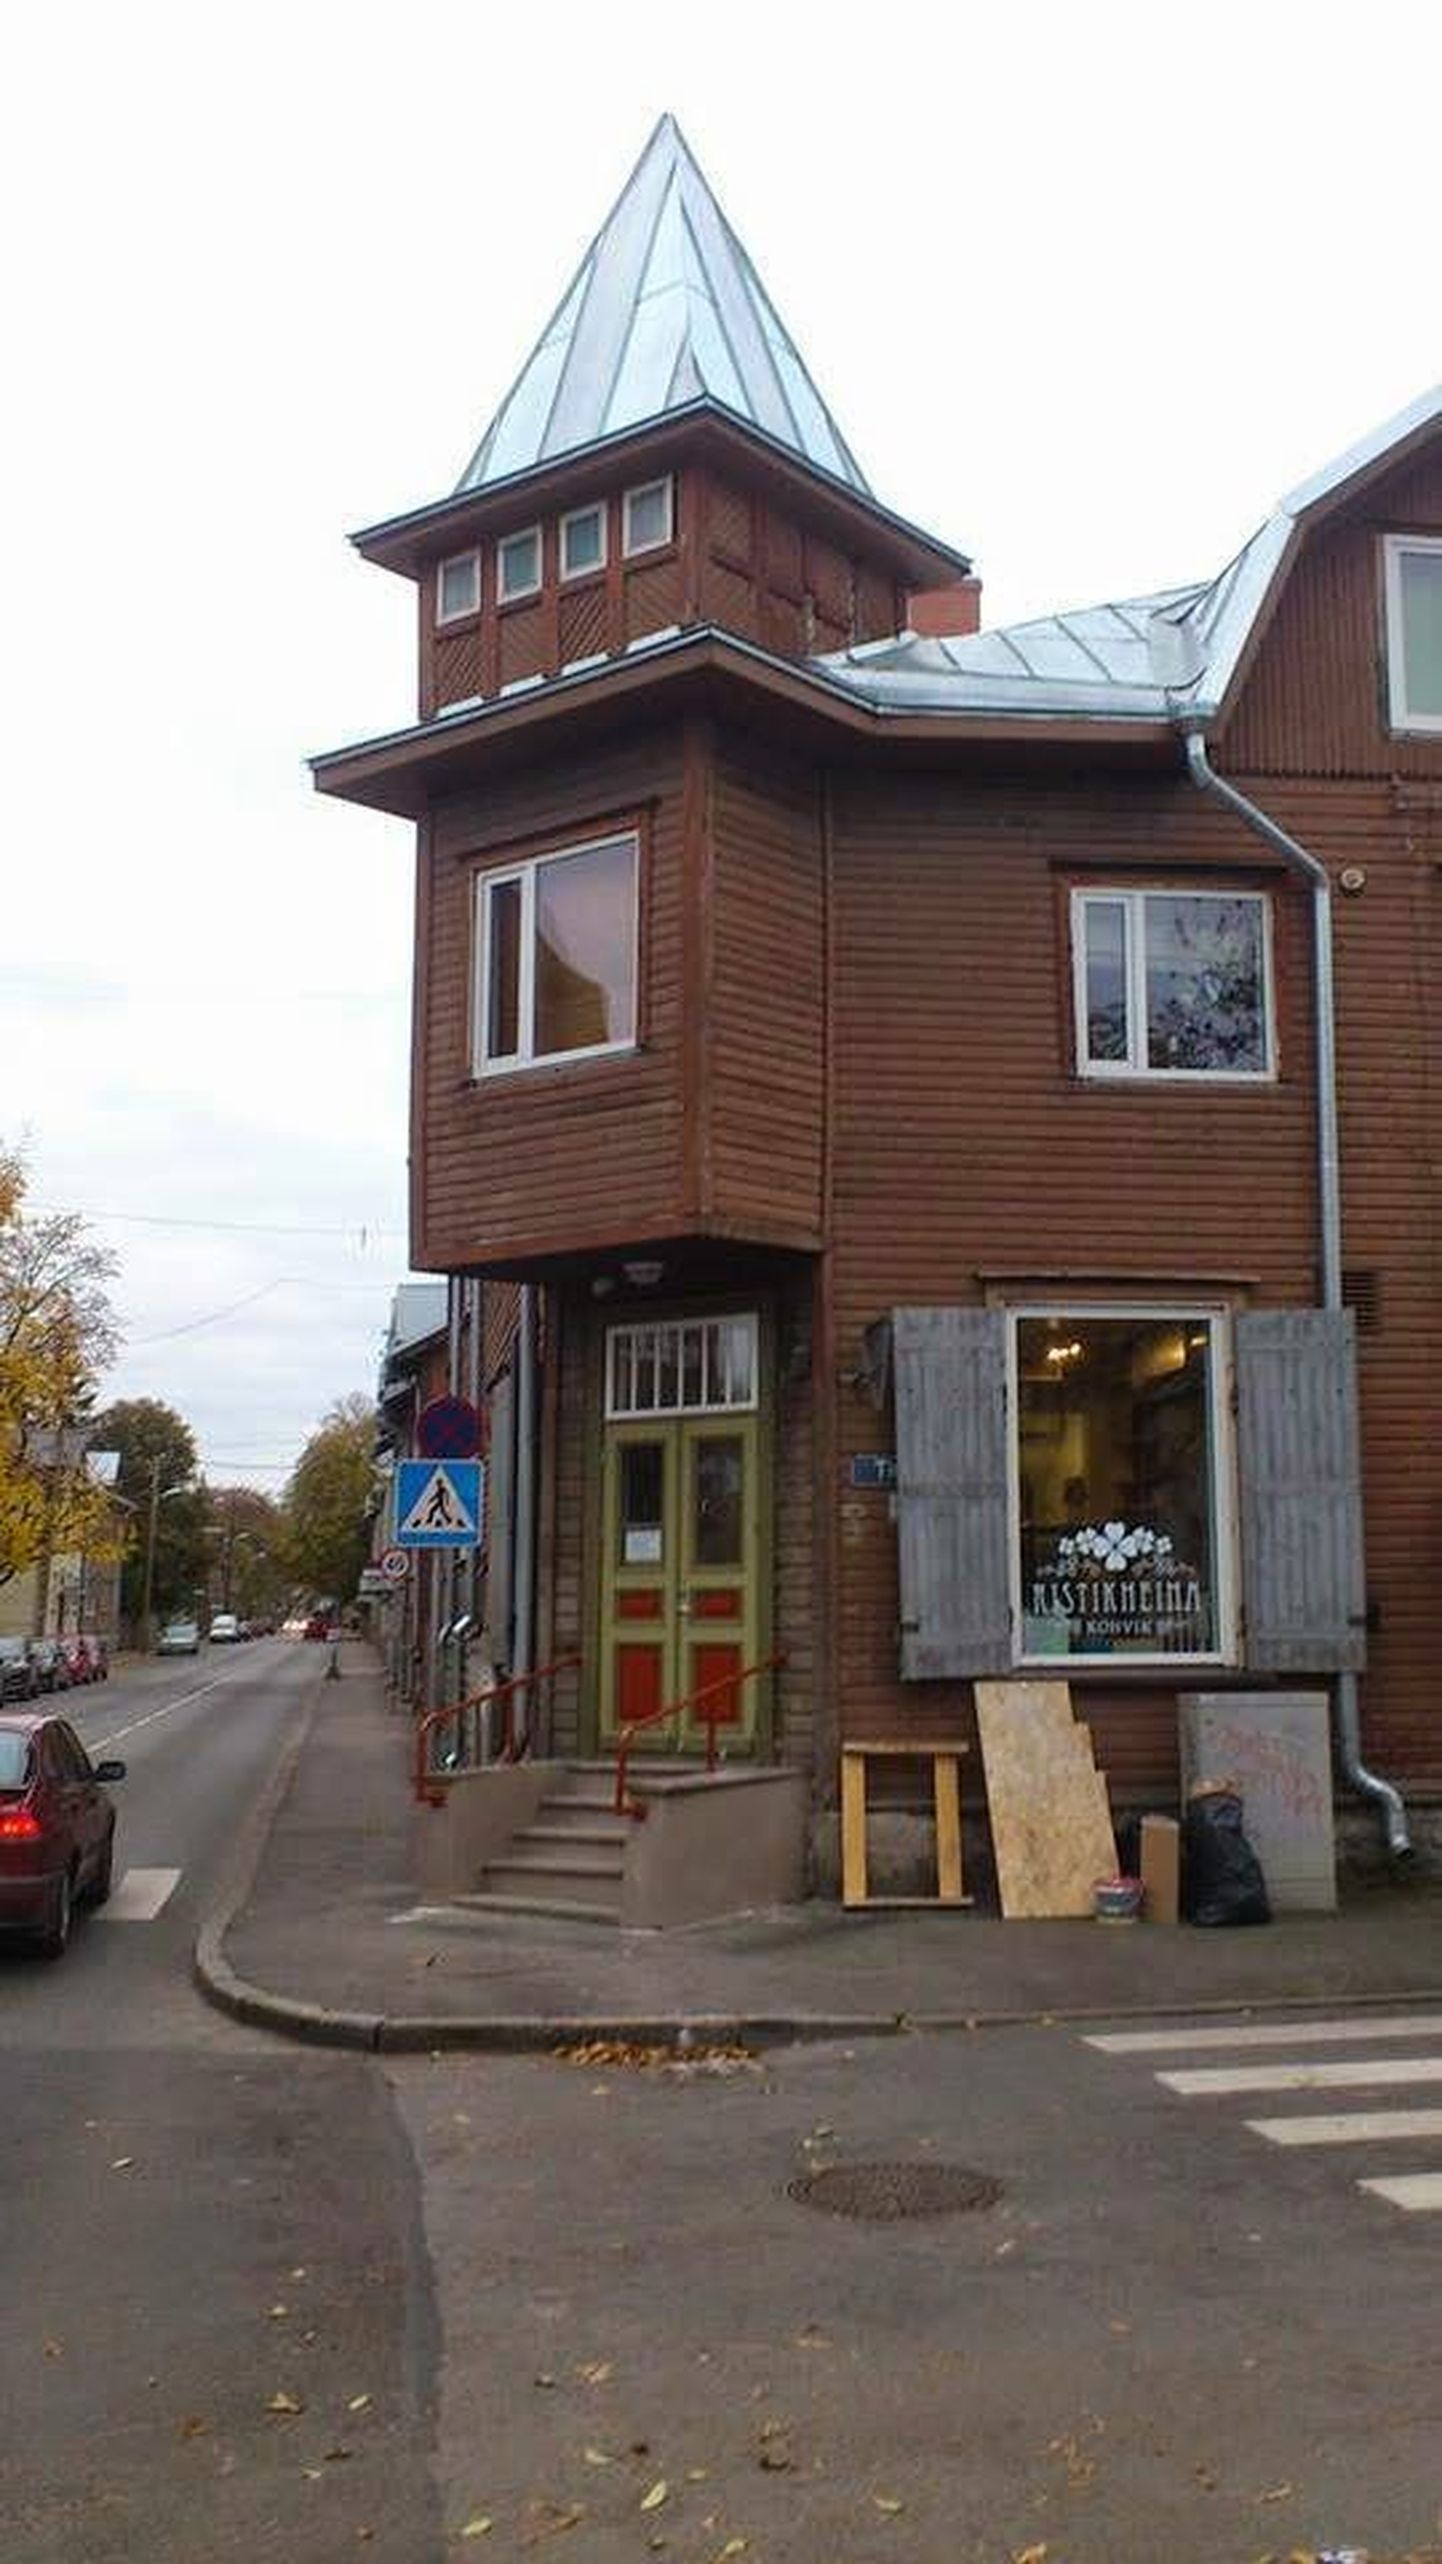 Pelgulinnas avas uksed Ristikheina kohvik.